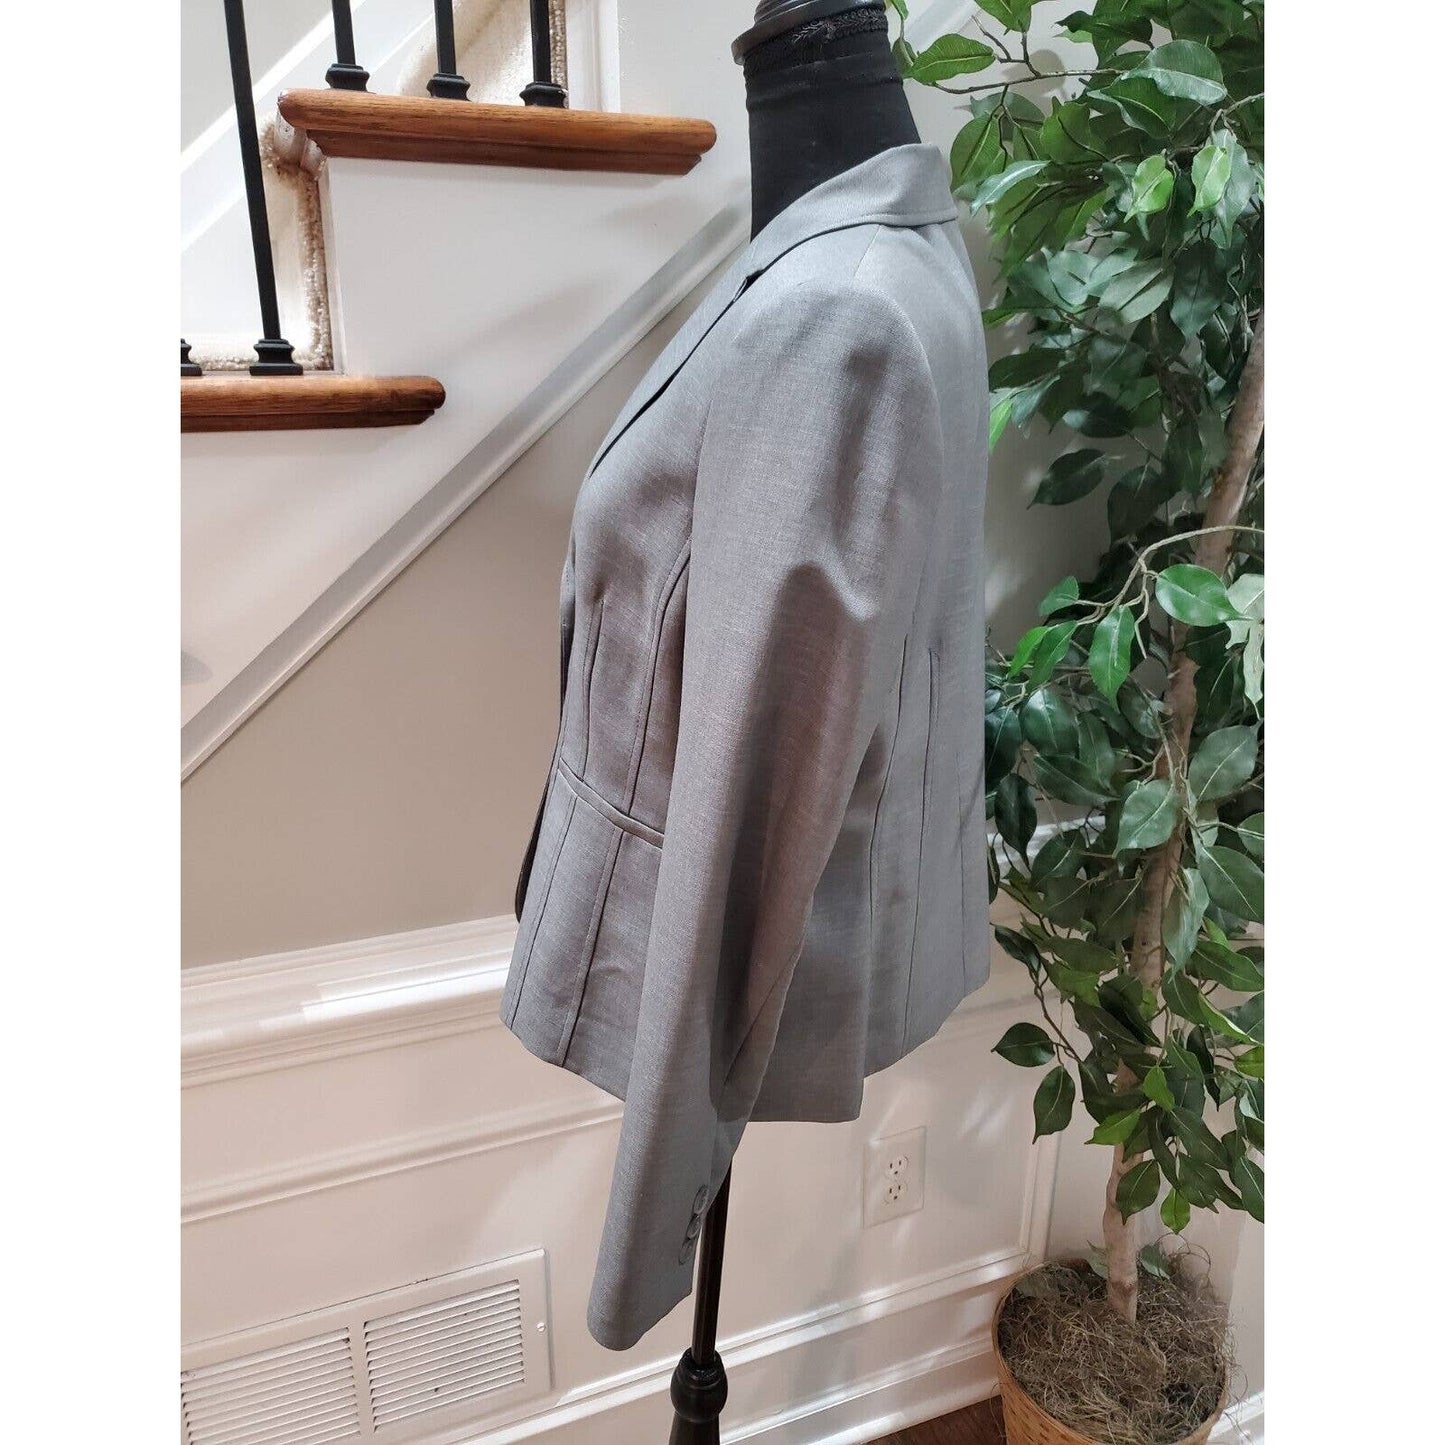 Kasper Women's Gray Polyester Long Sleeve Single Breasted Jacket Blazer Size 10